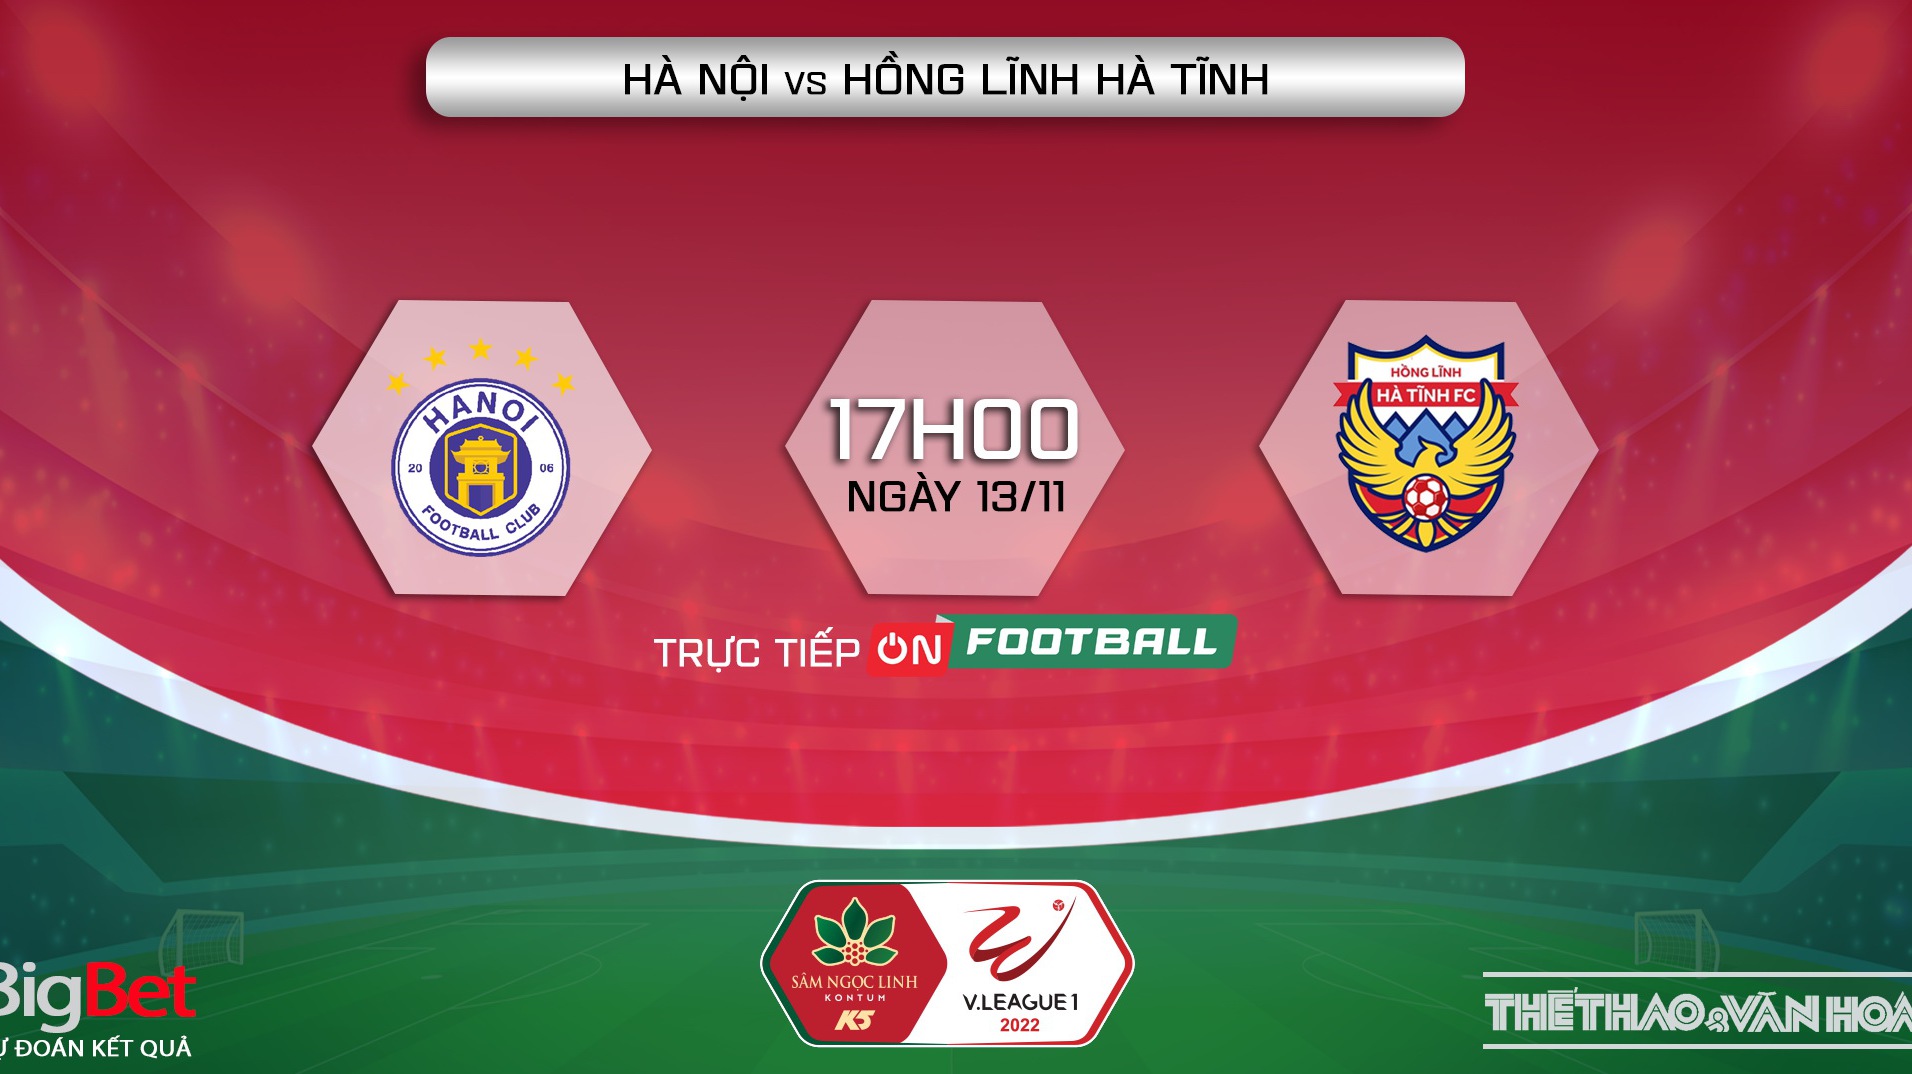 Nhận định bóng đá, nhận định Hà Nội vs Hà Tĩnh, V-League vòng 25 (17h00, 13/11)